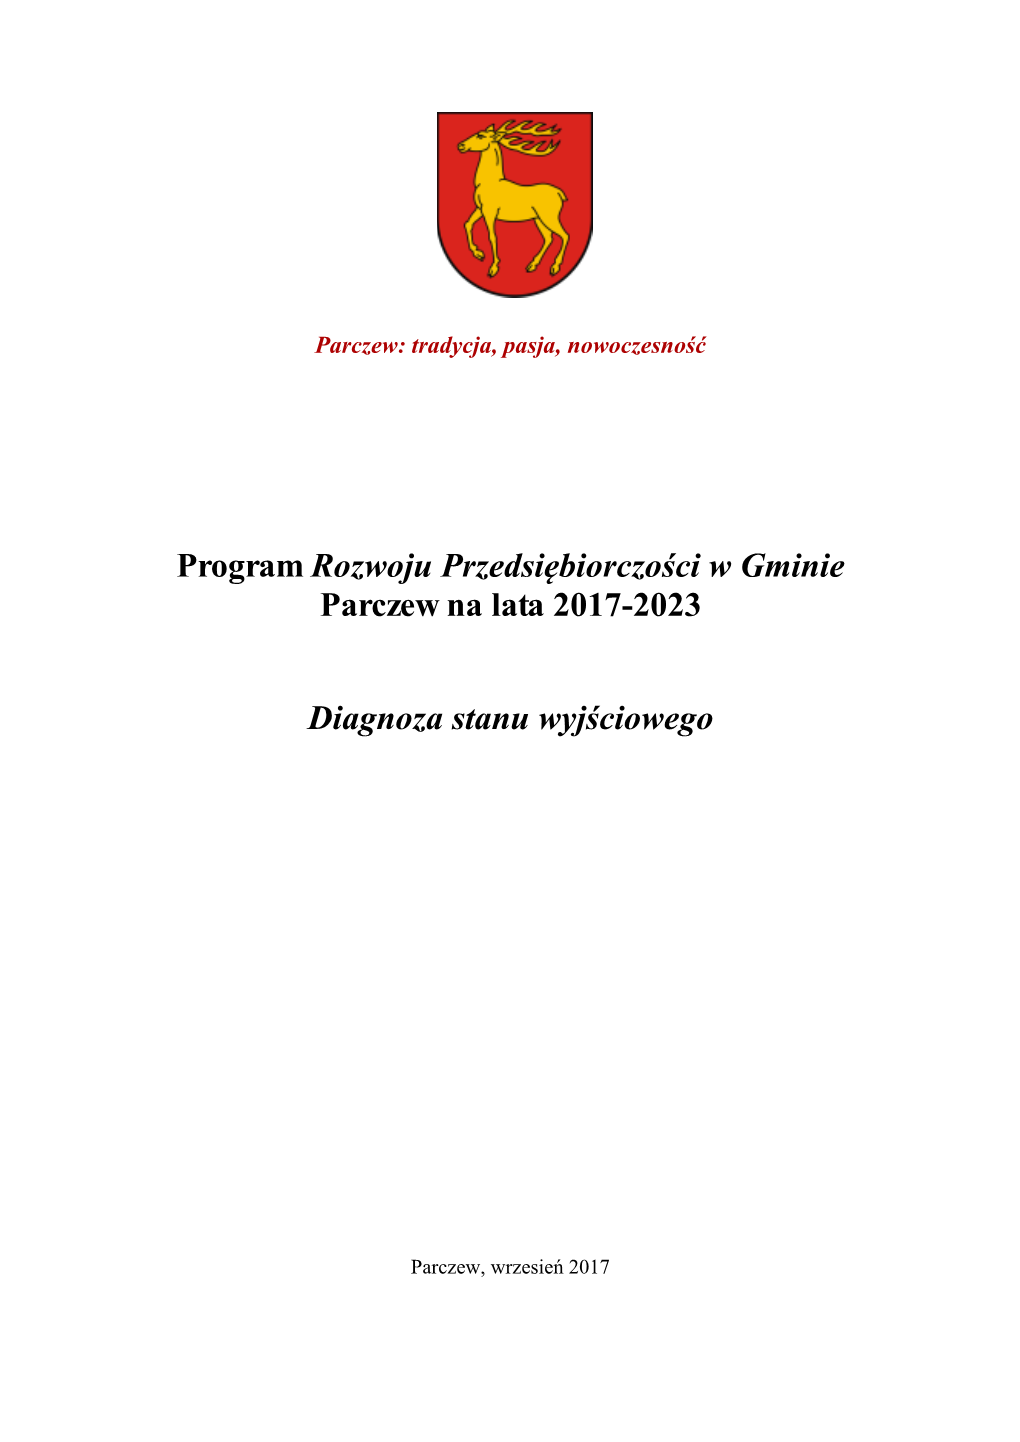 Program Rozwoju Przedsiębiorczości W Gminie Parczew Na Lata 2017-2023